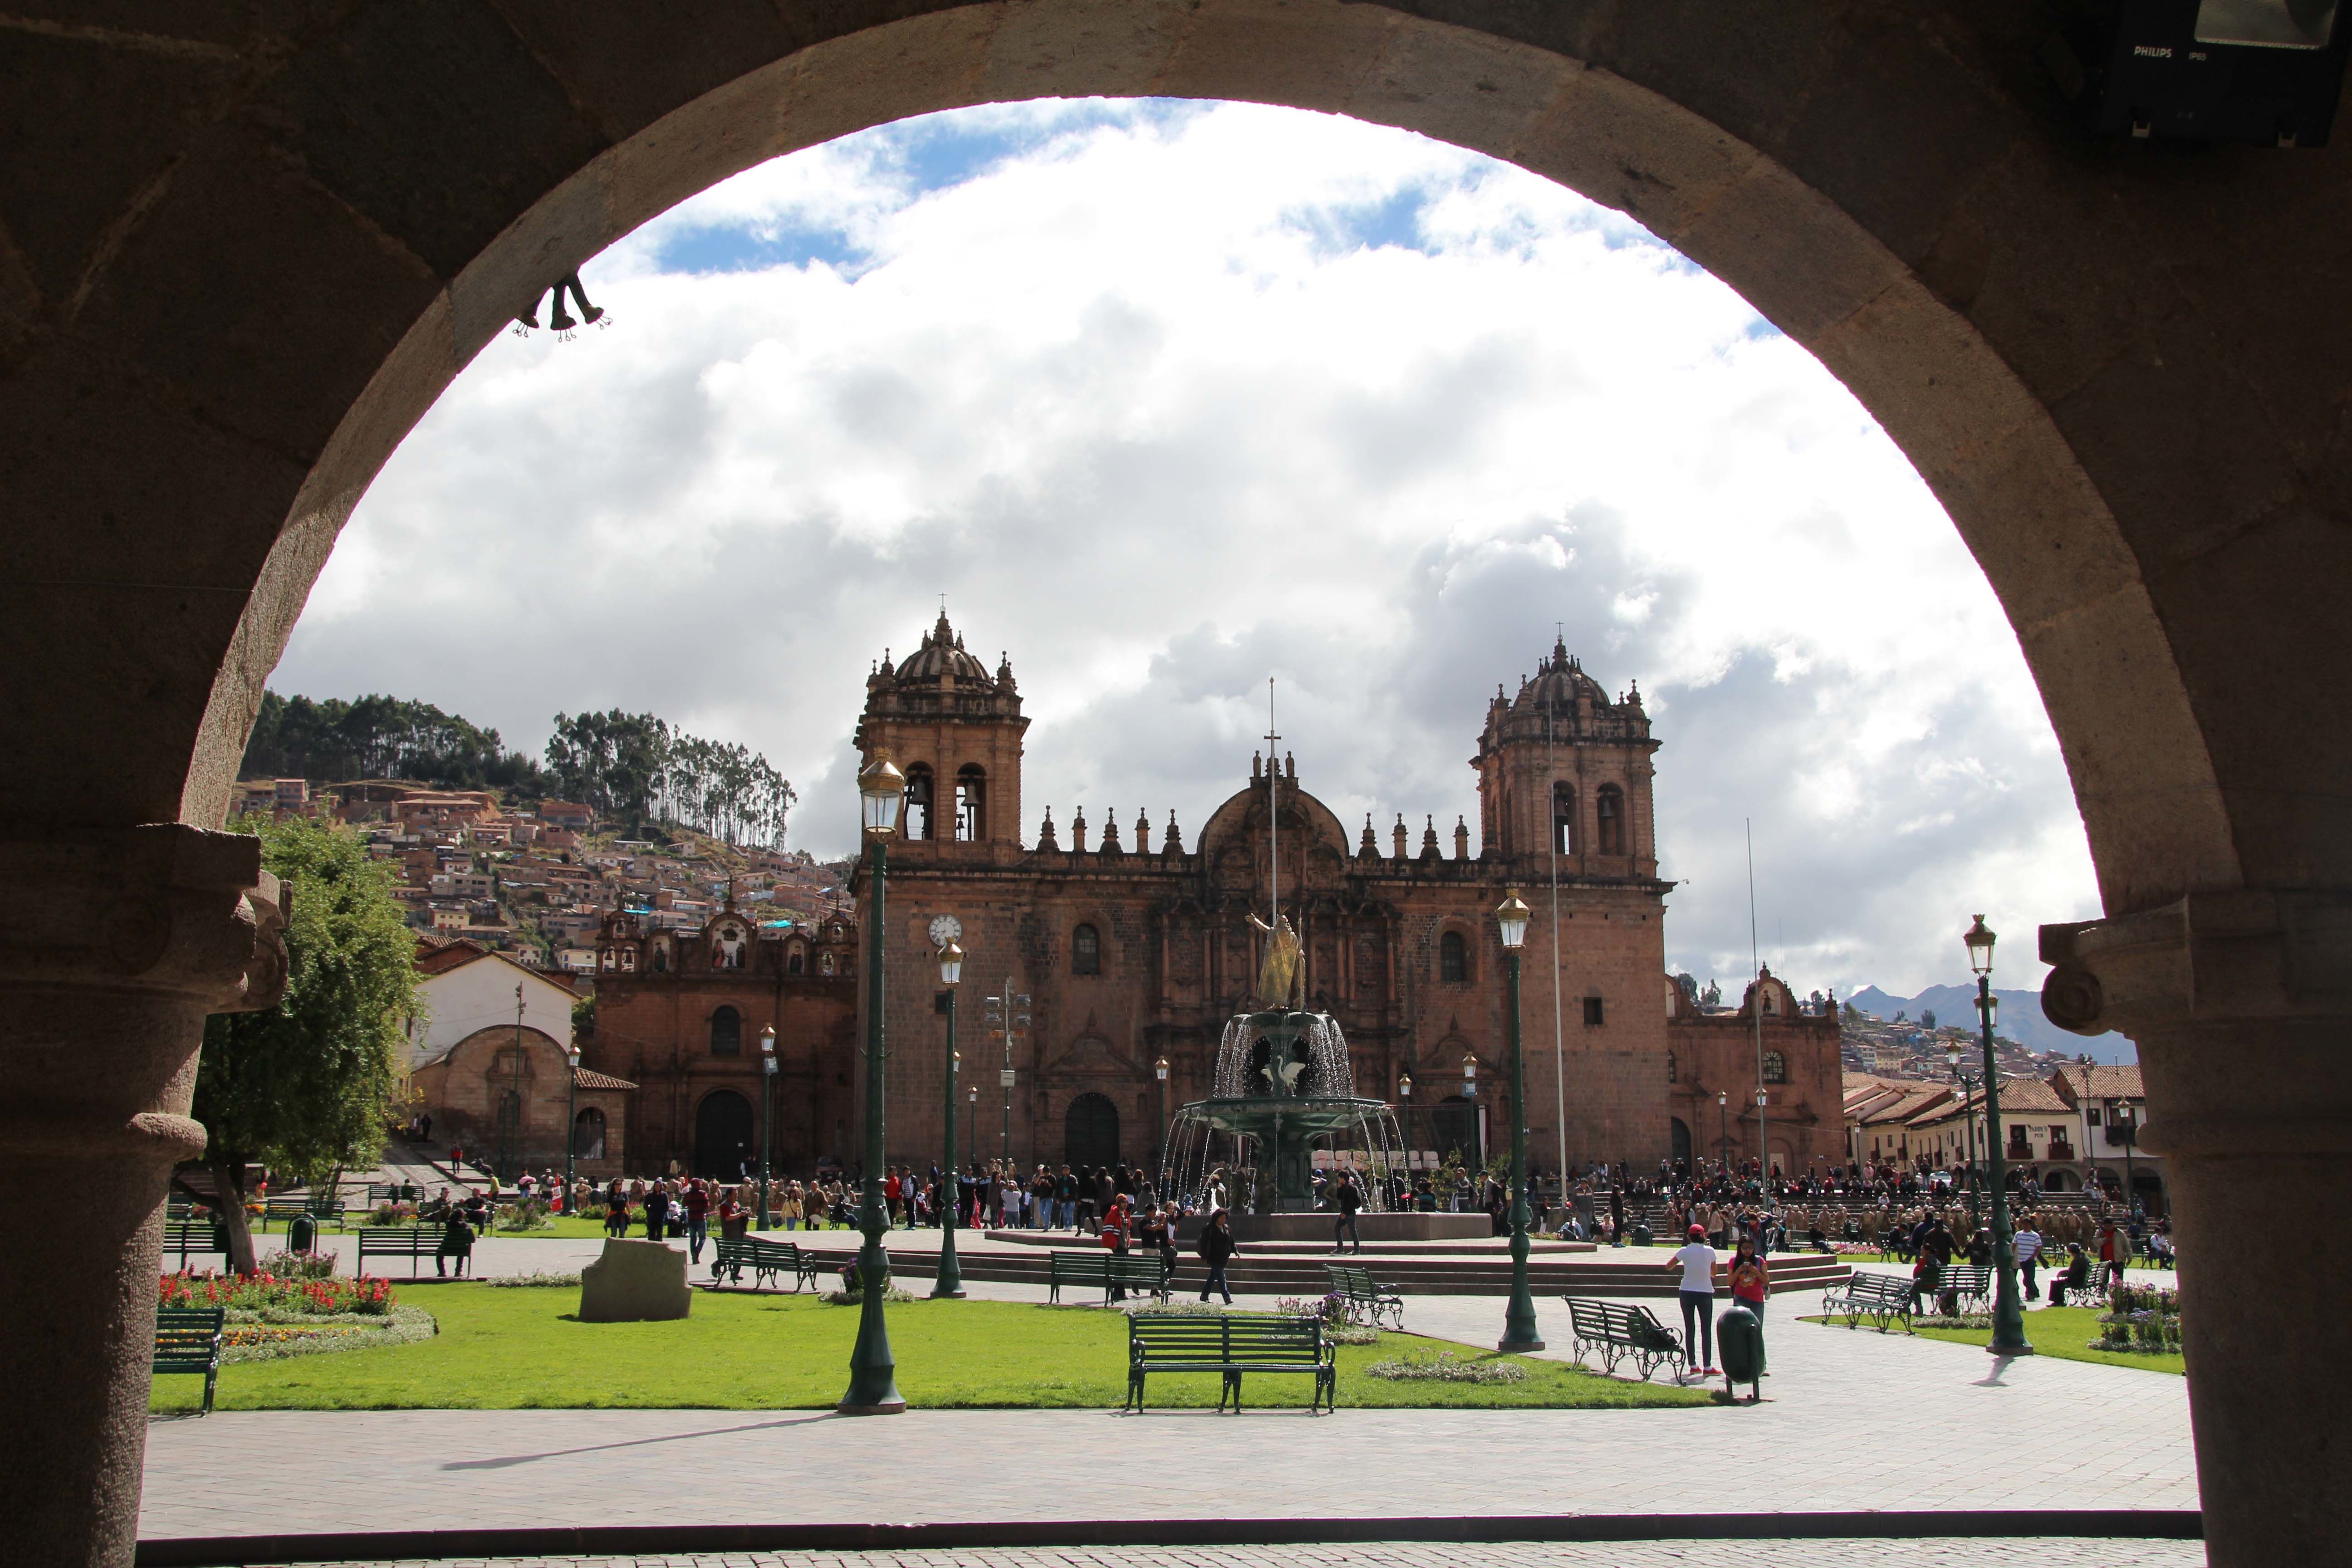 Cathédrale de Cuzco